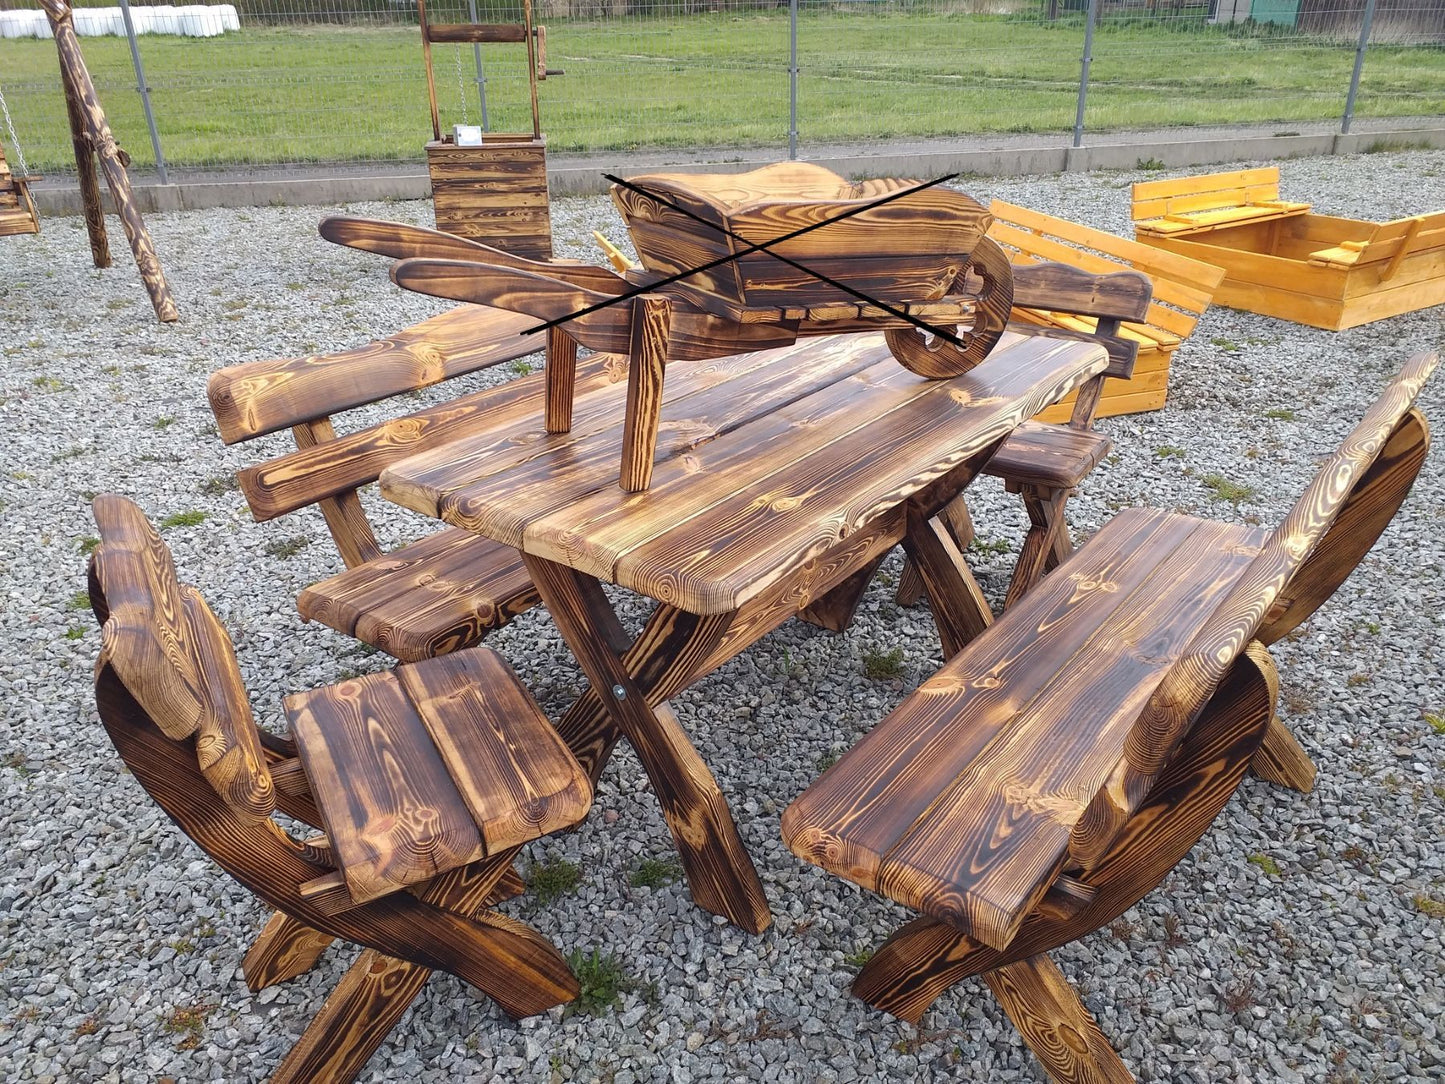 Gartenmöbel, Holzsitzgruppe, Tisch mit 2 Banken und 2 Stühlen, Farbe geflammt